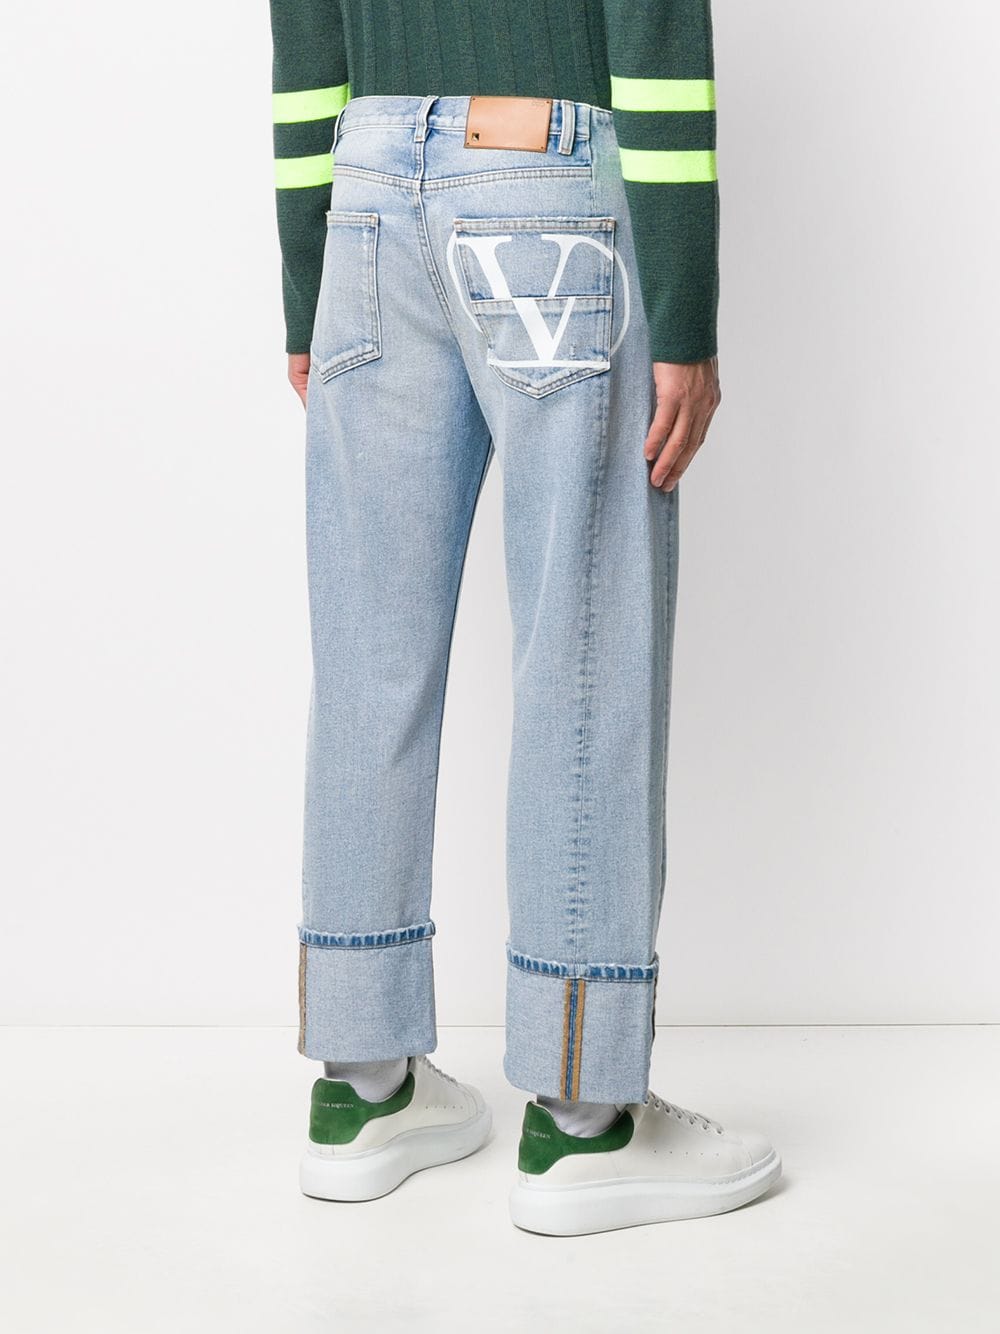 фото Valentino джинсы прямого кроя с логотипом vlogo